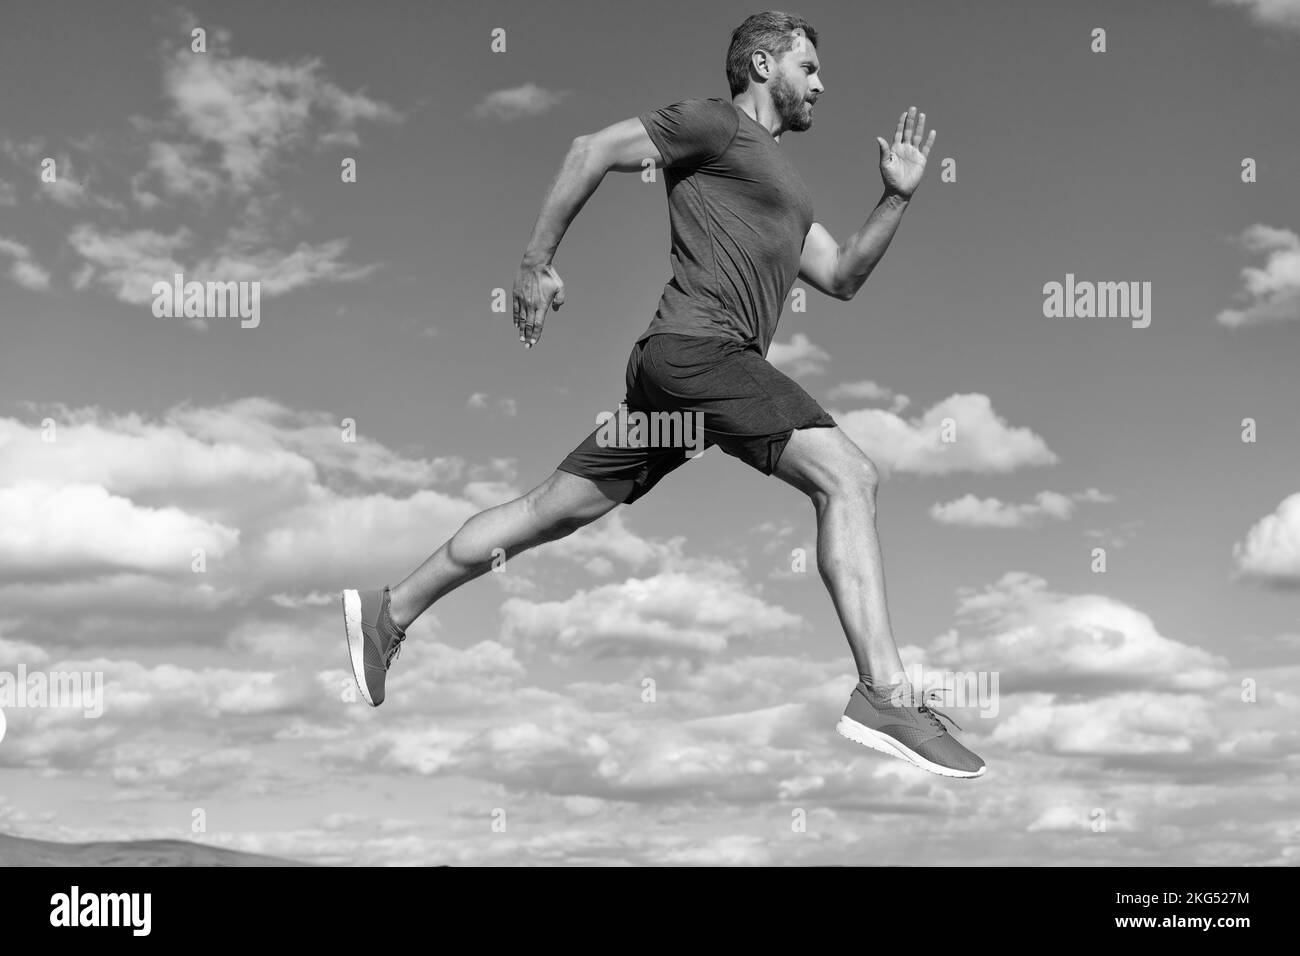 Voller Energie. Freiheit fühlen. marathon-Geschwindigkeit. Ausdauer und Ausdauer. Jung und frei. Stockfoto